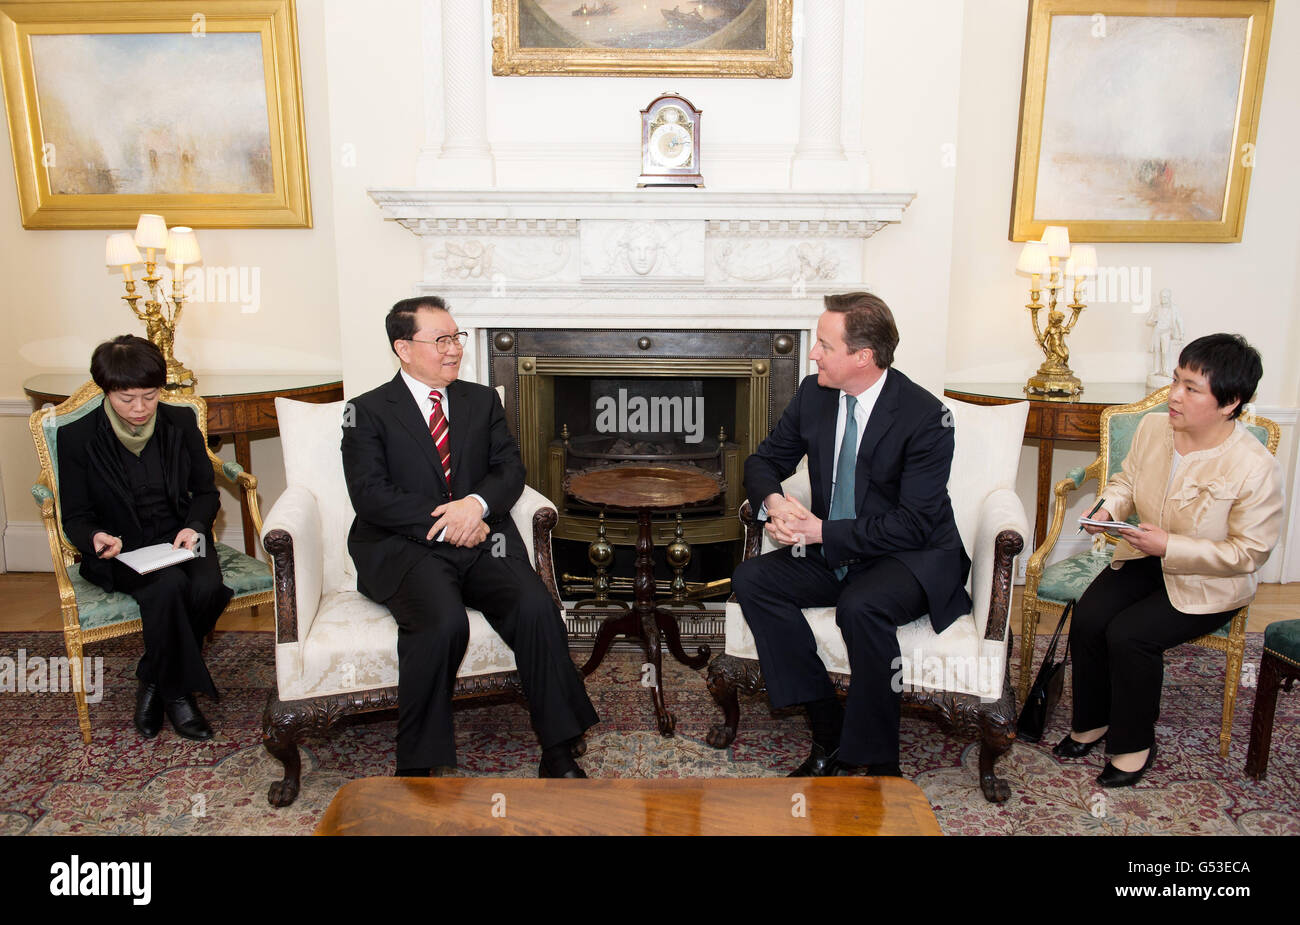 Il primo ministro David Cameron ha parlato con l'alto funzionario del Partito comunista cinese, il membro del Politburo li Changchun, al n. 10, per discutere gli sforzi volti ad approfondire le relazioni commerciali e culturali del Regno Unito con la Cina, nonché la cooperazione bilaterale su questioni globali come l'Iran e la Siria. Foto Stock